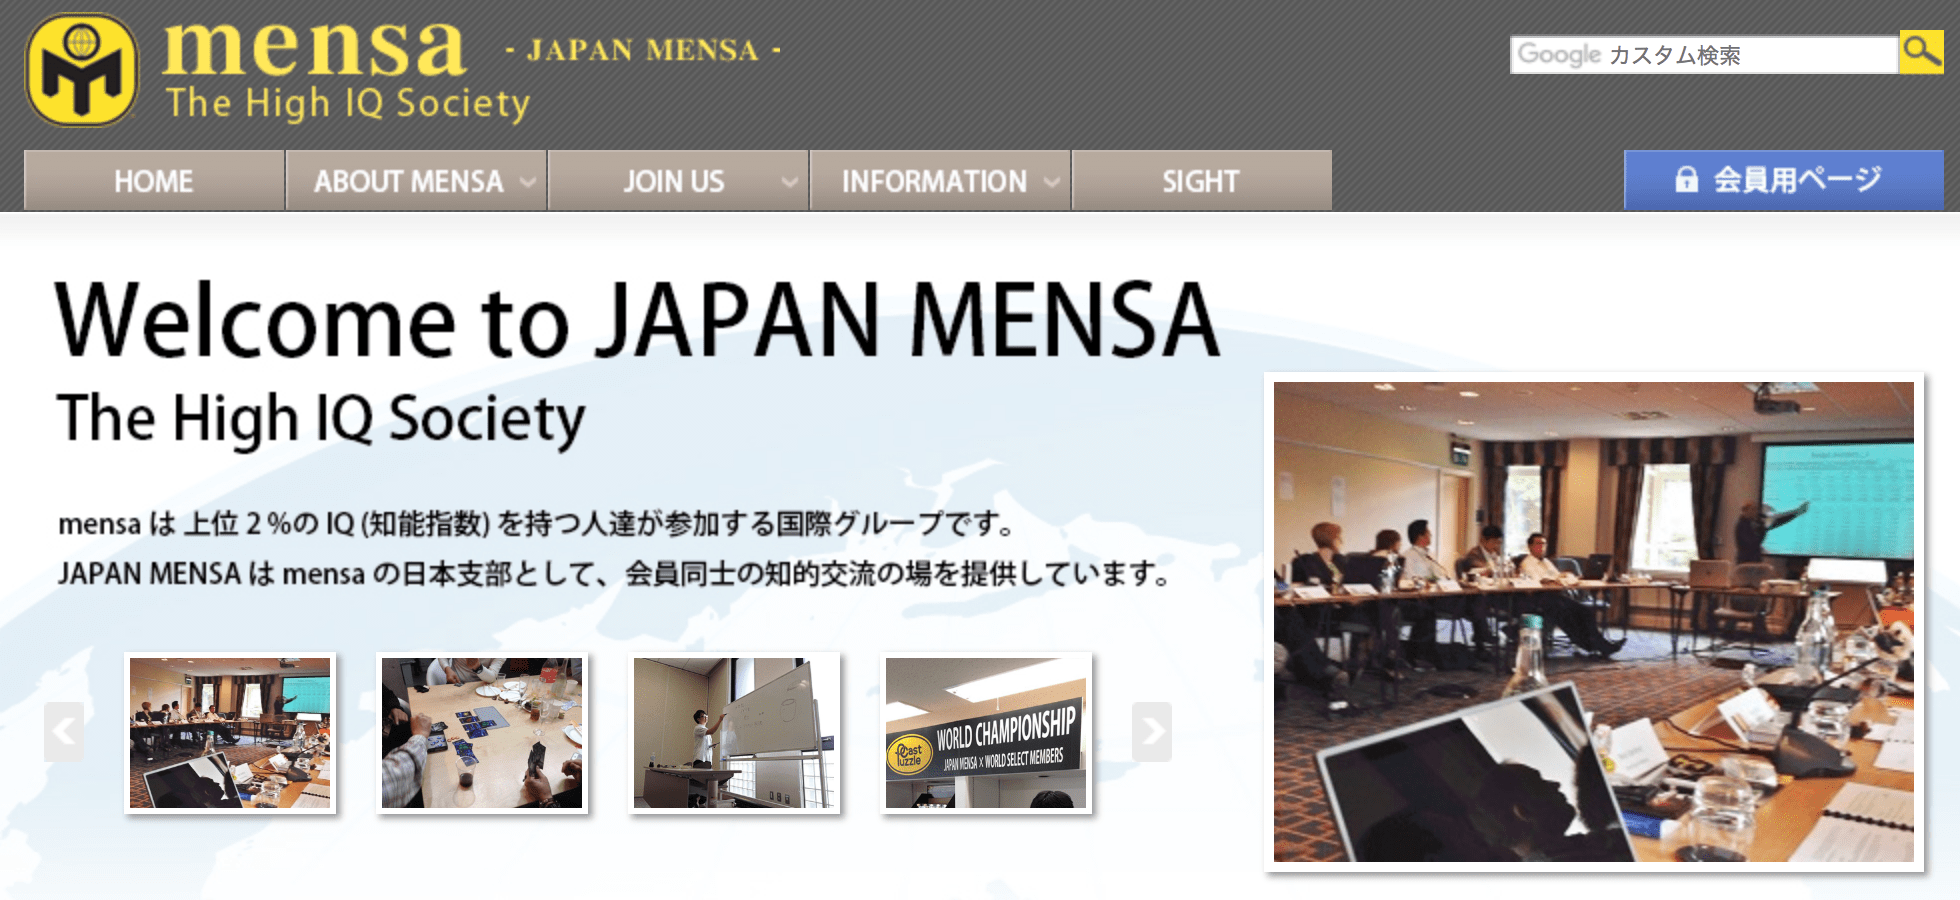 大阪買蔵  会員証 メンサ ジャパン MENSA JAPAN 印刷物